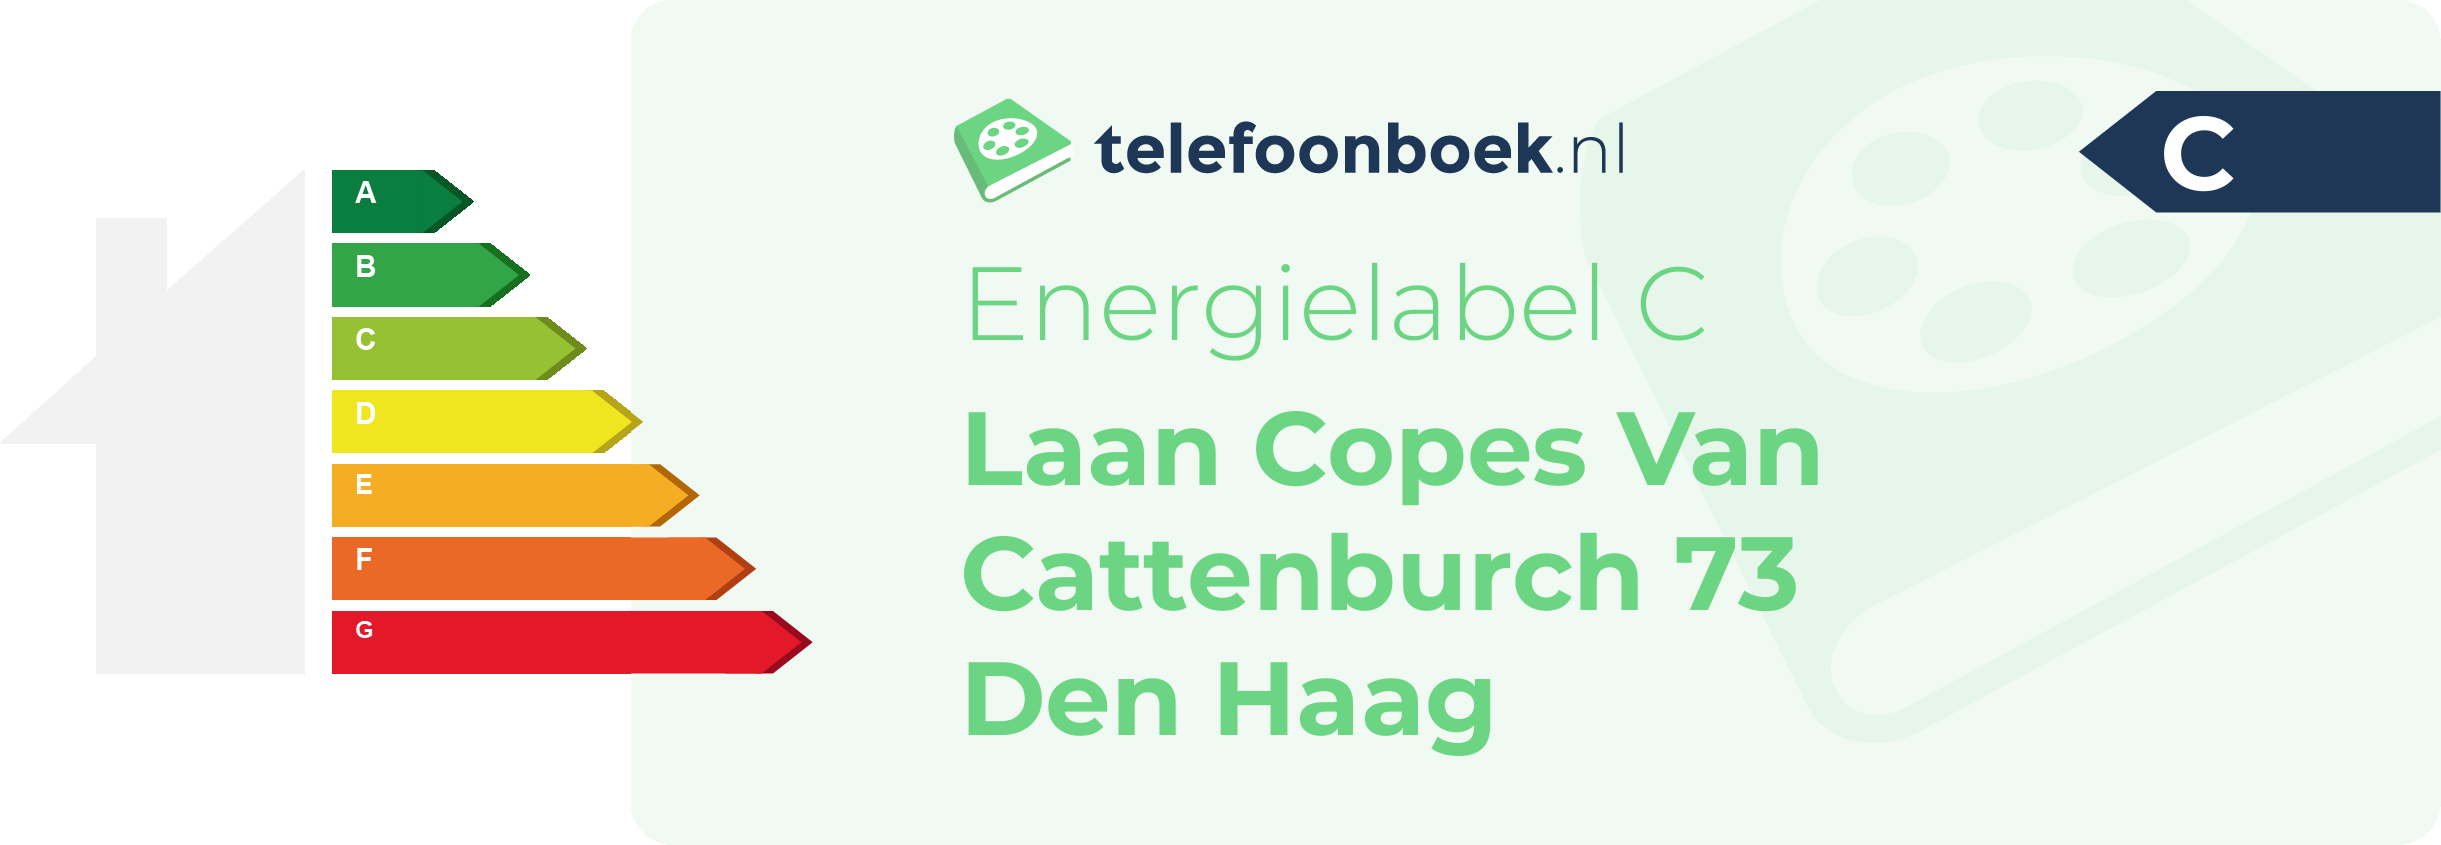 Energielabel Laan Copes Van Cattenburch 73 Den Haag